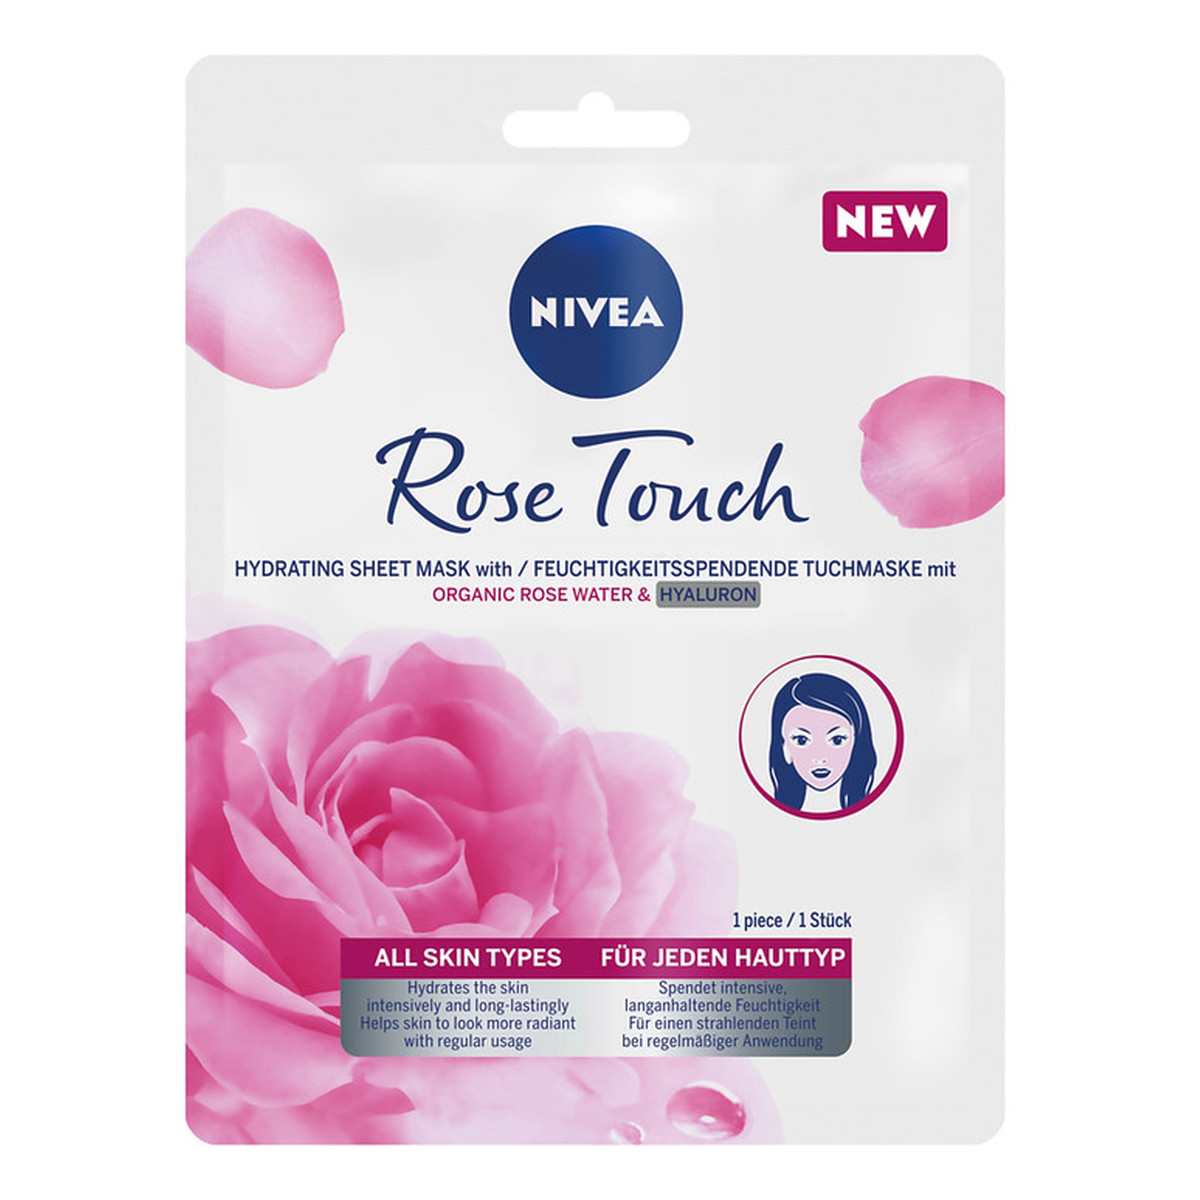 Nivea Rose touch intensywnie nawilżająca maska z organiczną wodą różaną i kwasem hialuronowym